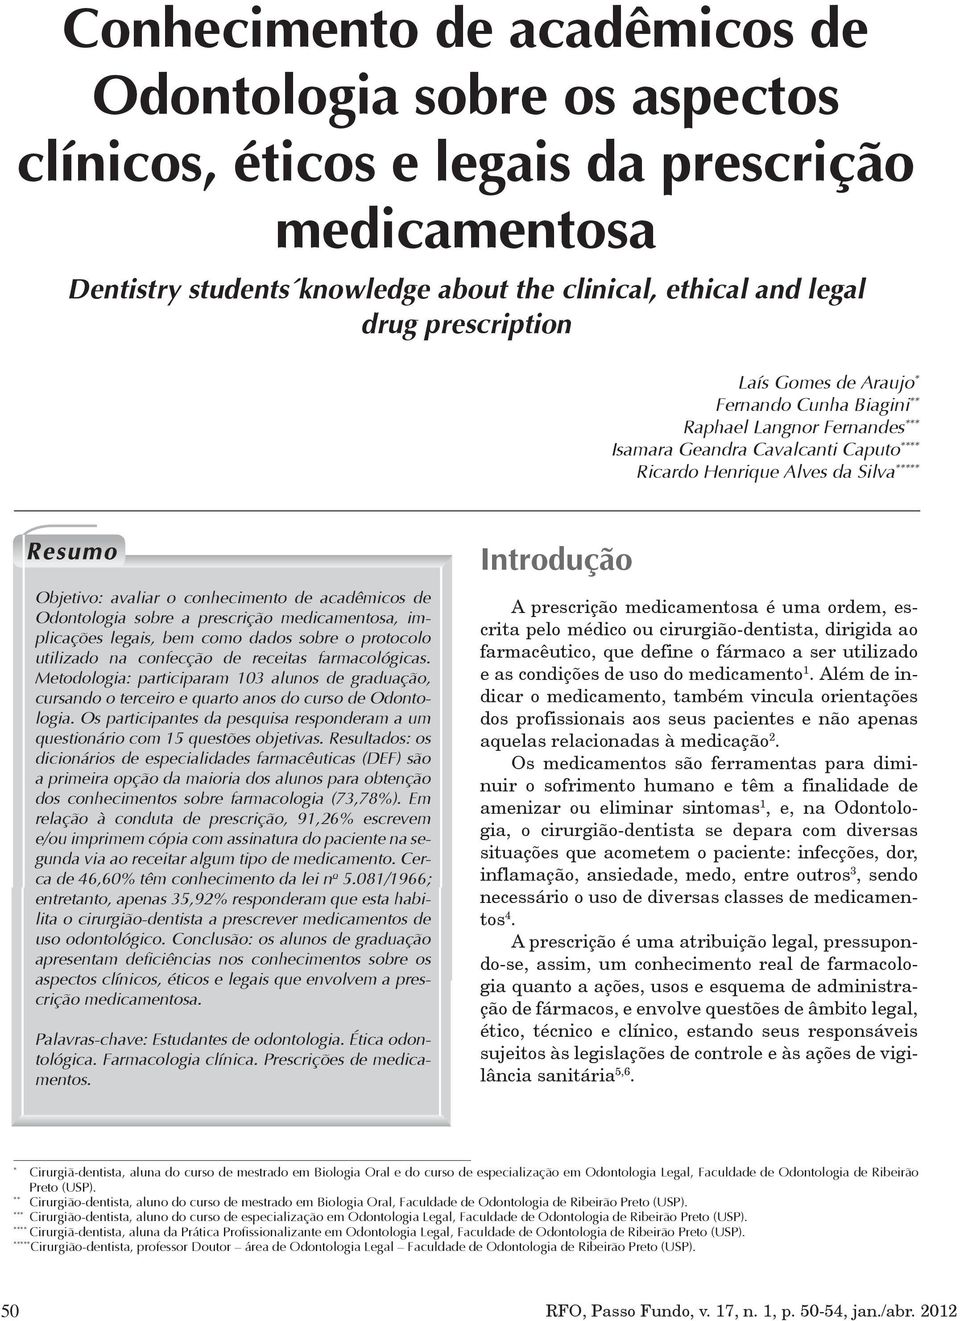 acadêmicos de Odontologia sobre a prescrição medicamentosa, implicações legais, bem como dados sobre o protocolo utilizado na confecção de receitas farmacológicas.